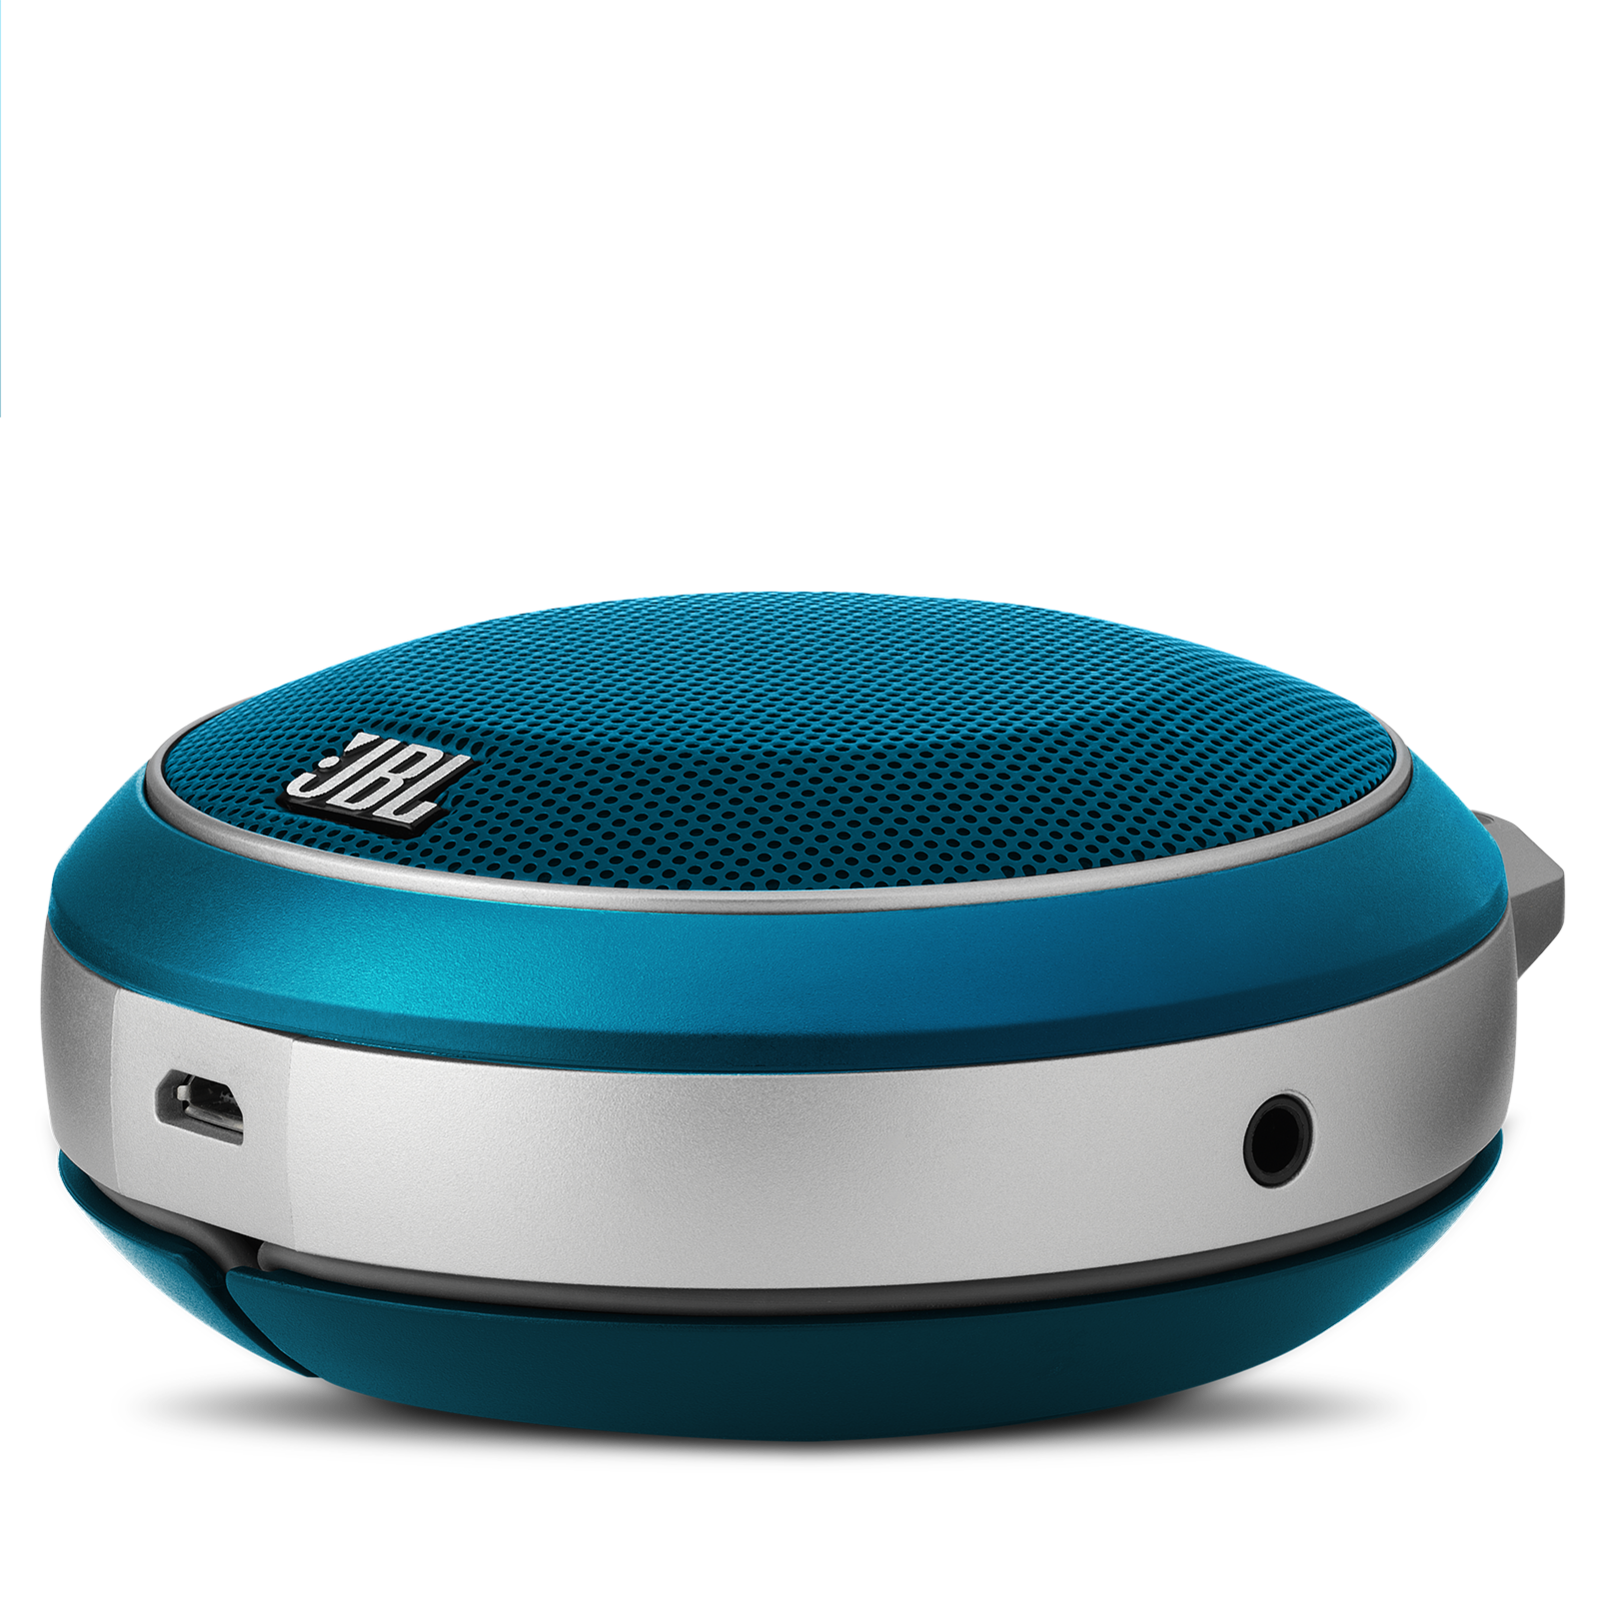 JBL Micro Wireless Mini Portable Bluetooth Speaker